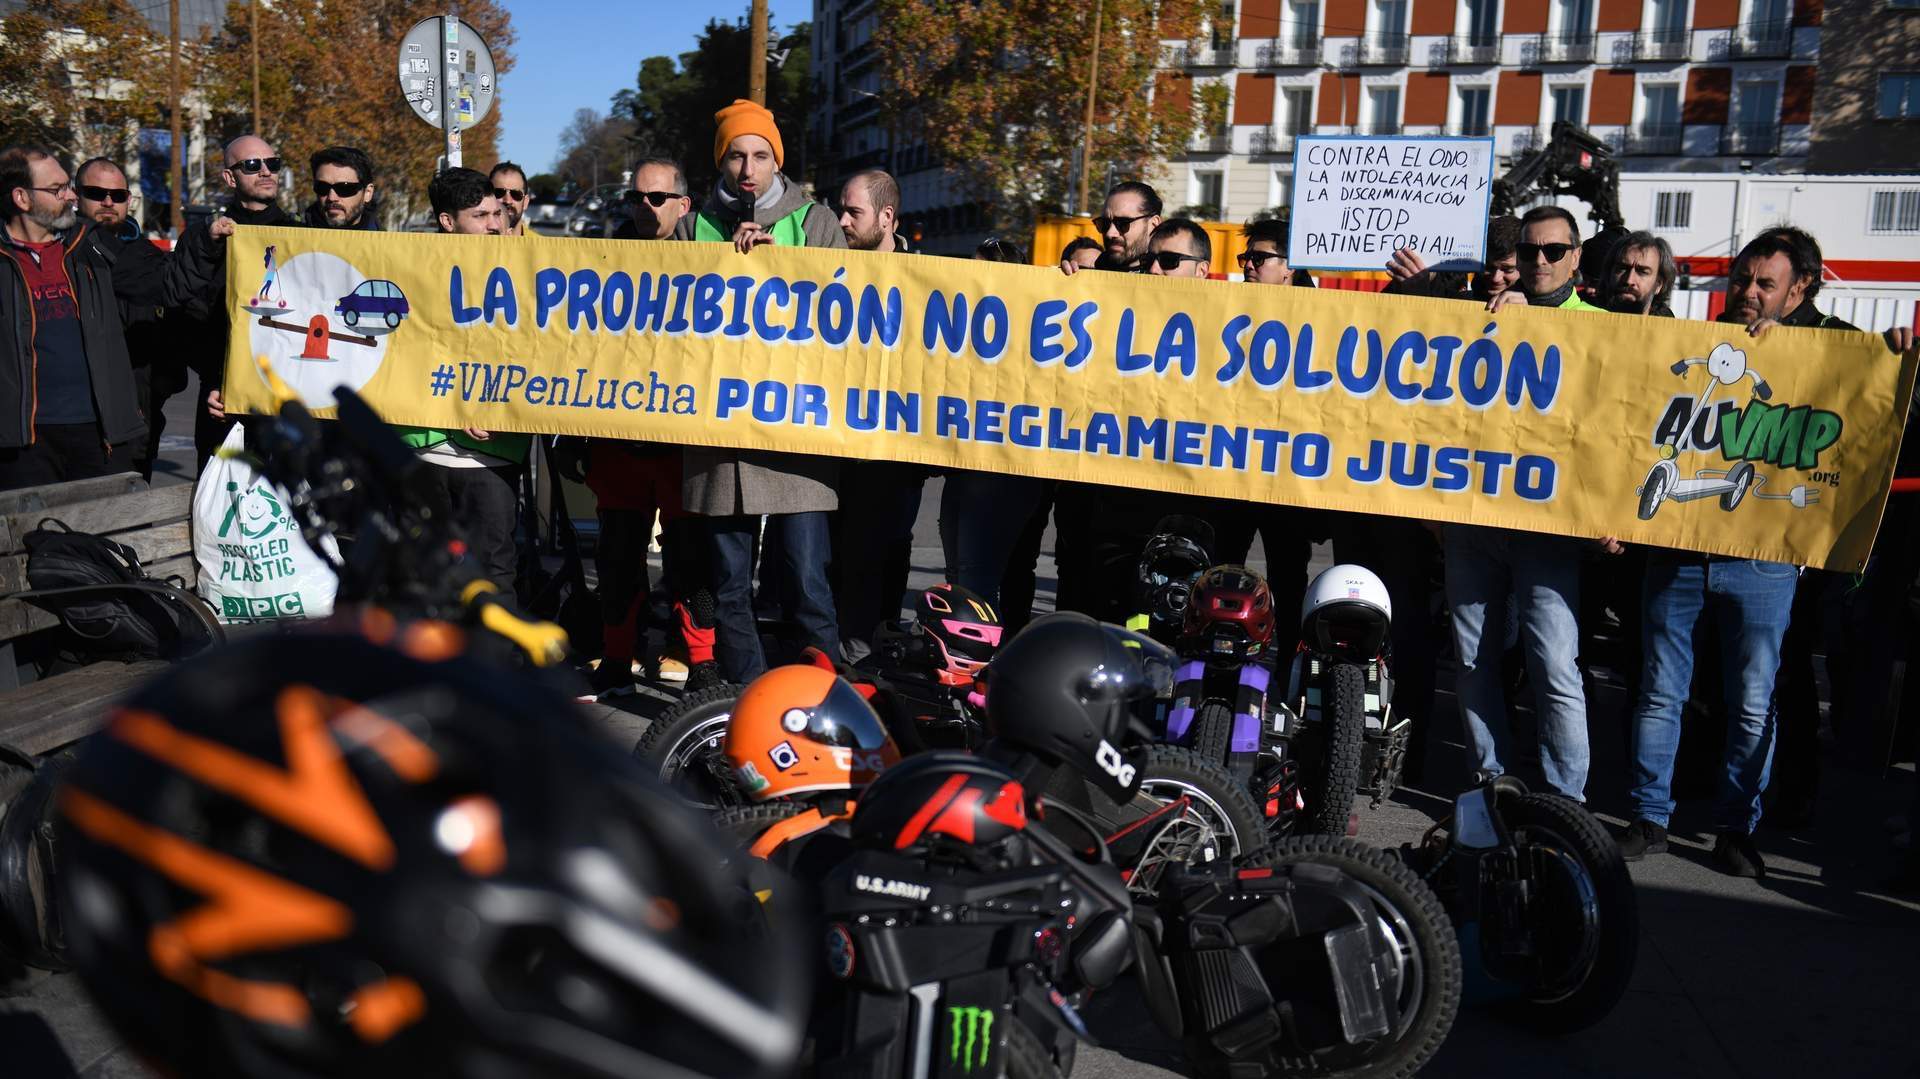 Varias personas durante una manifestación en contra de la prohibición de los patinetes eléctricos en transporte público, en diciembre, en Madrid. Fernando Sánchez / Europa Press